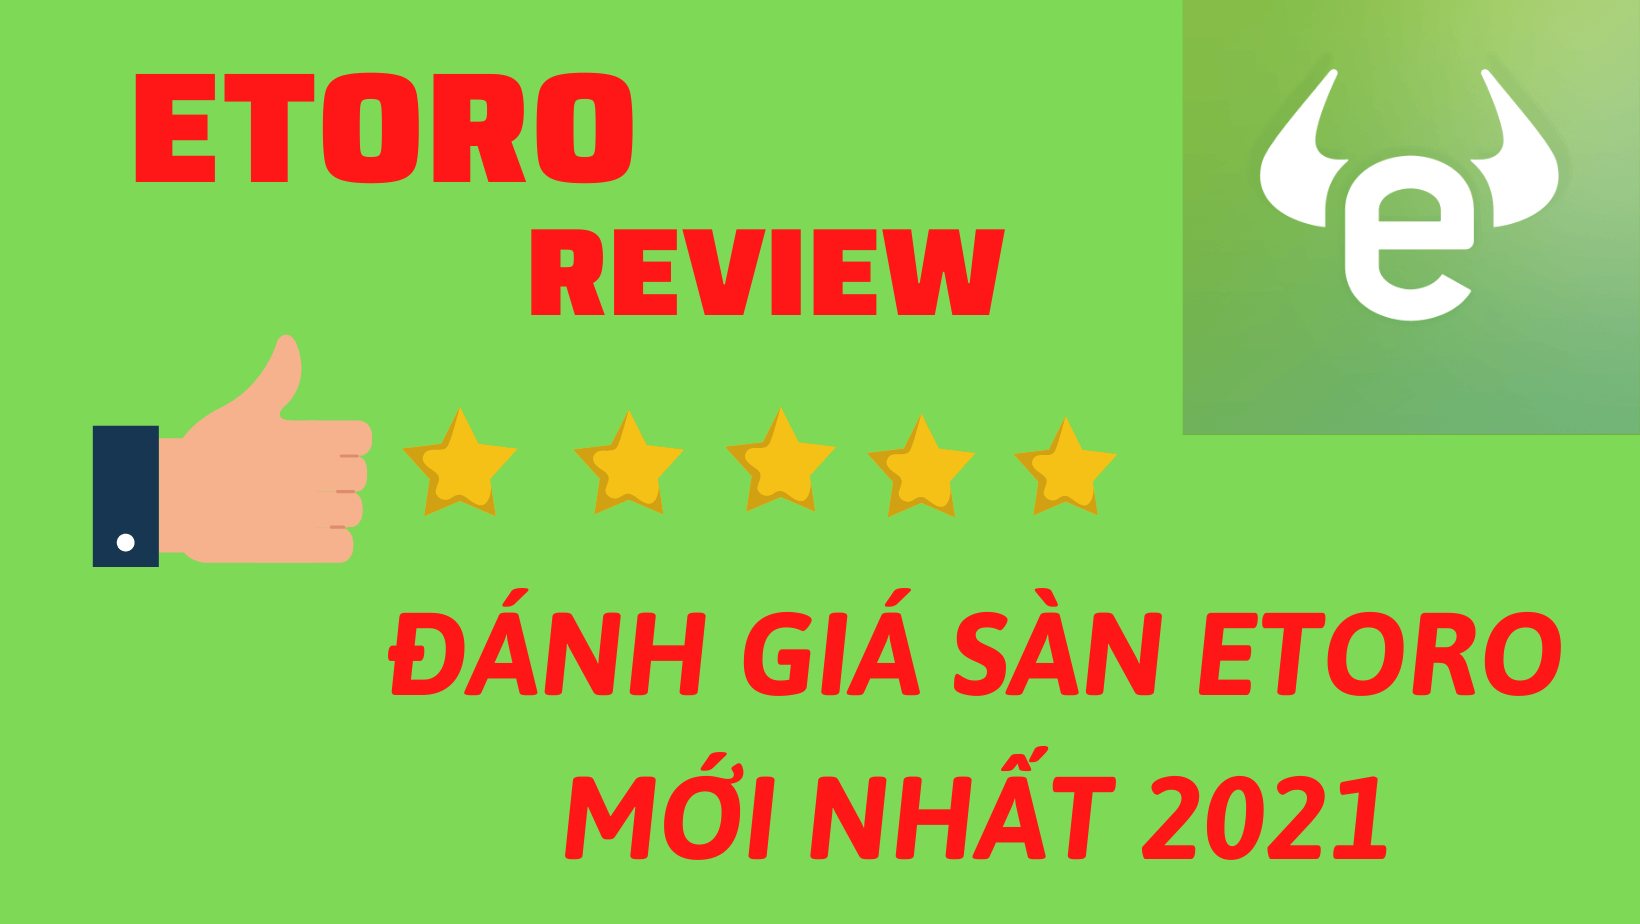 eToro review - Đánh giá sàn eToro 2021 - Forex15phut.com